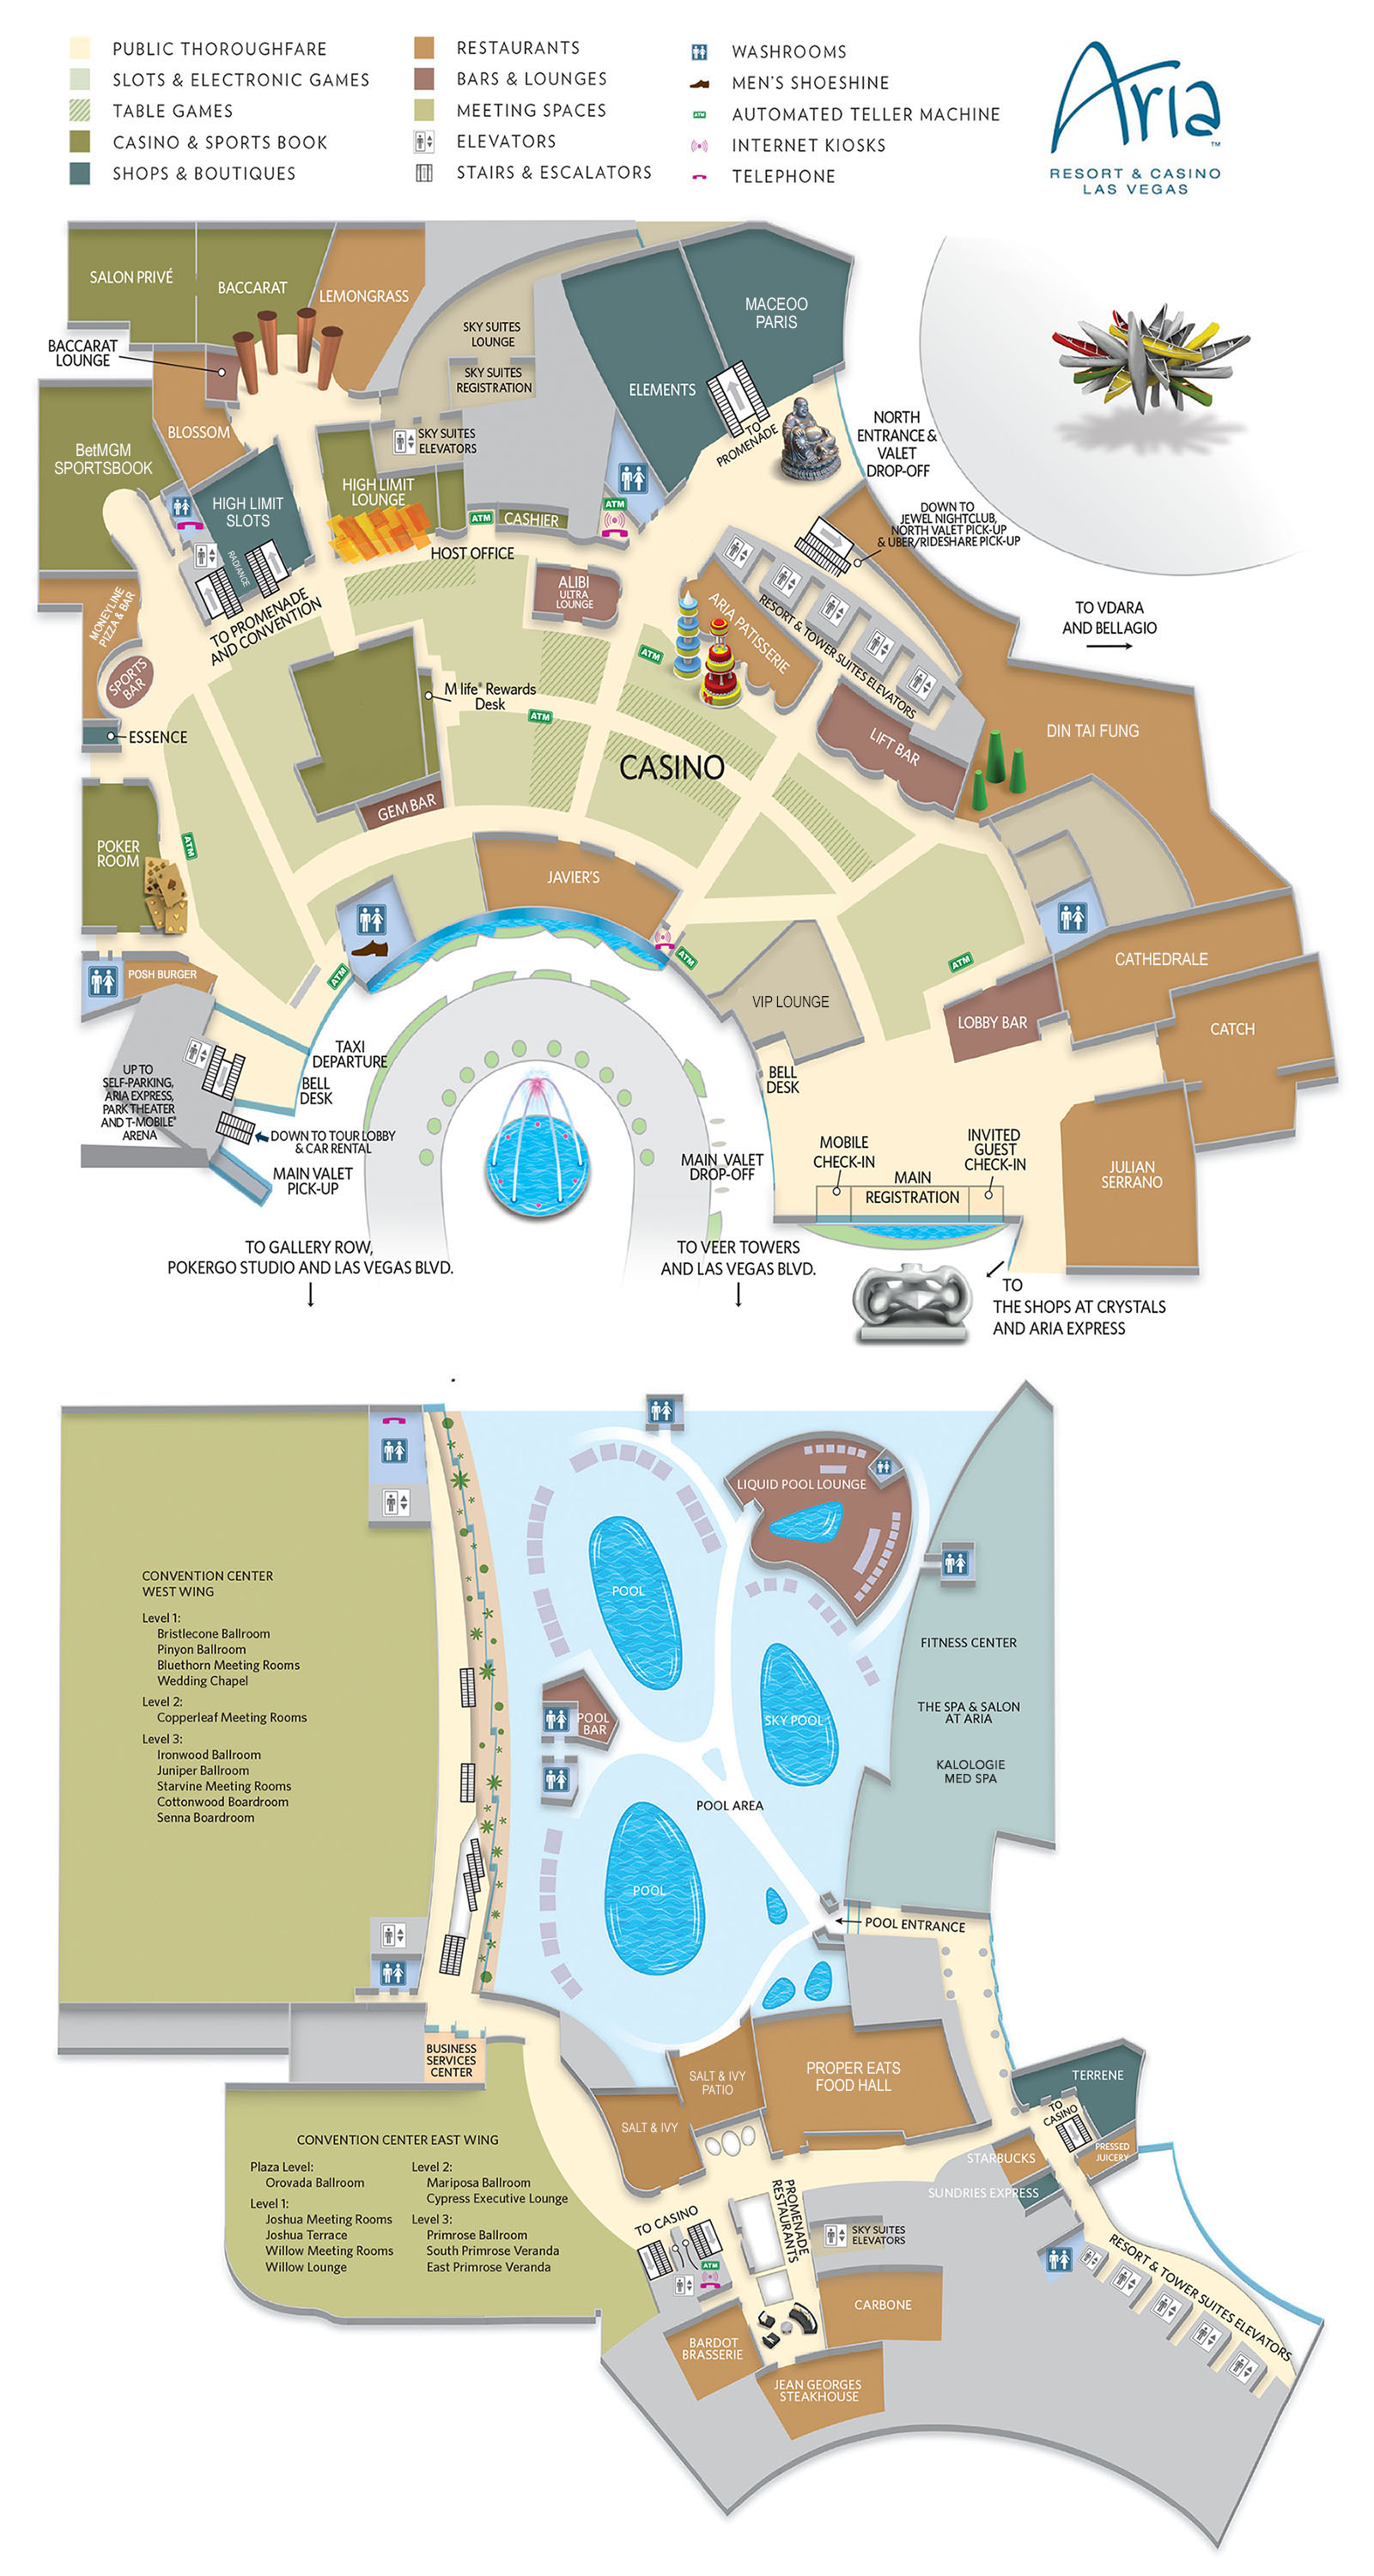 Aria Las Vegas Map